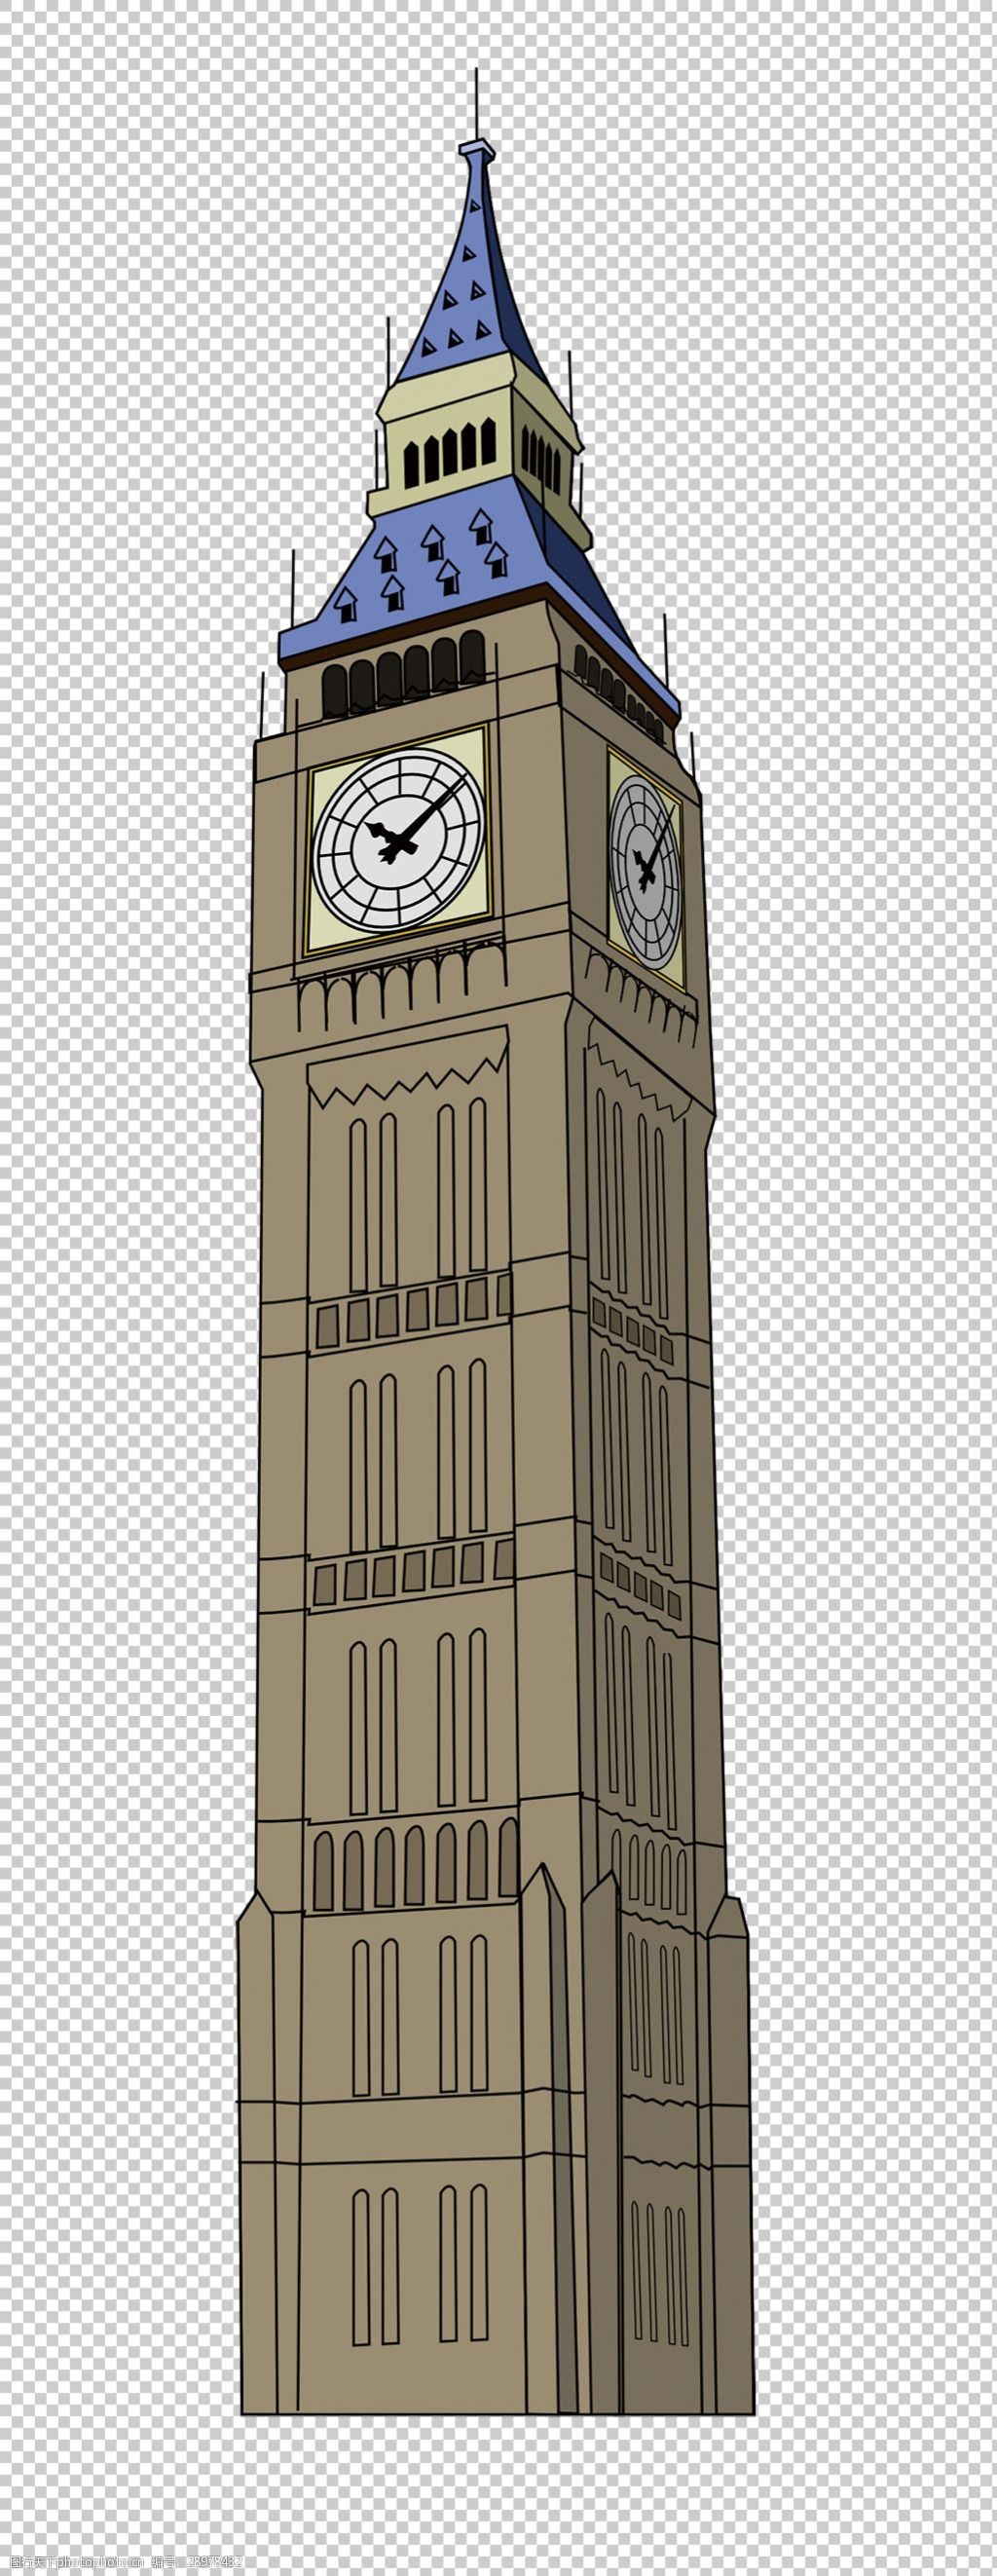 伦敦简笔画大本钟图片